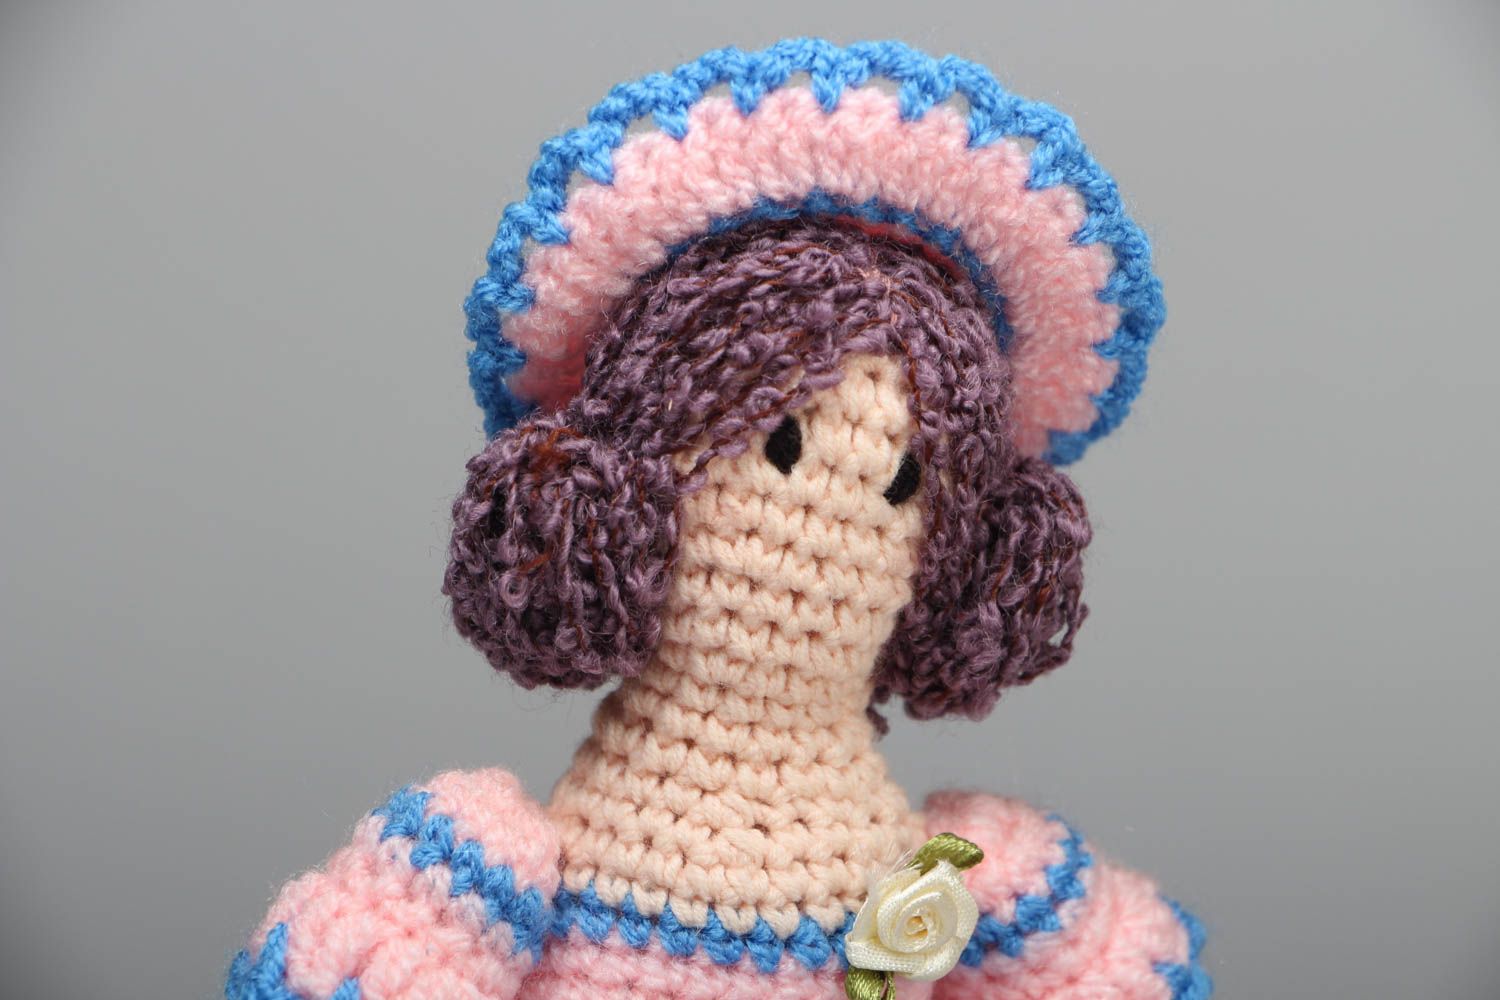 Crochet doll in hat photo 2